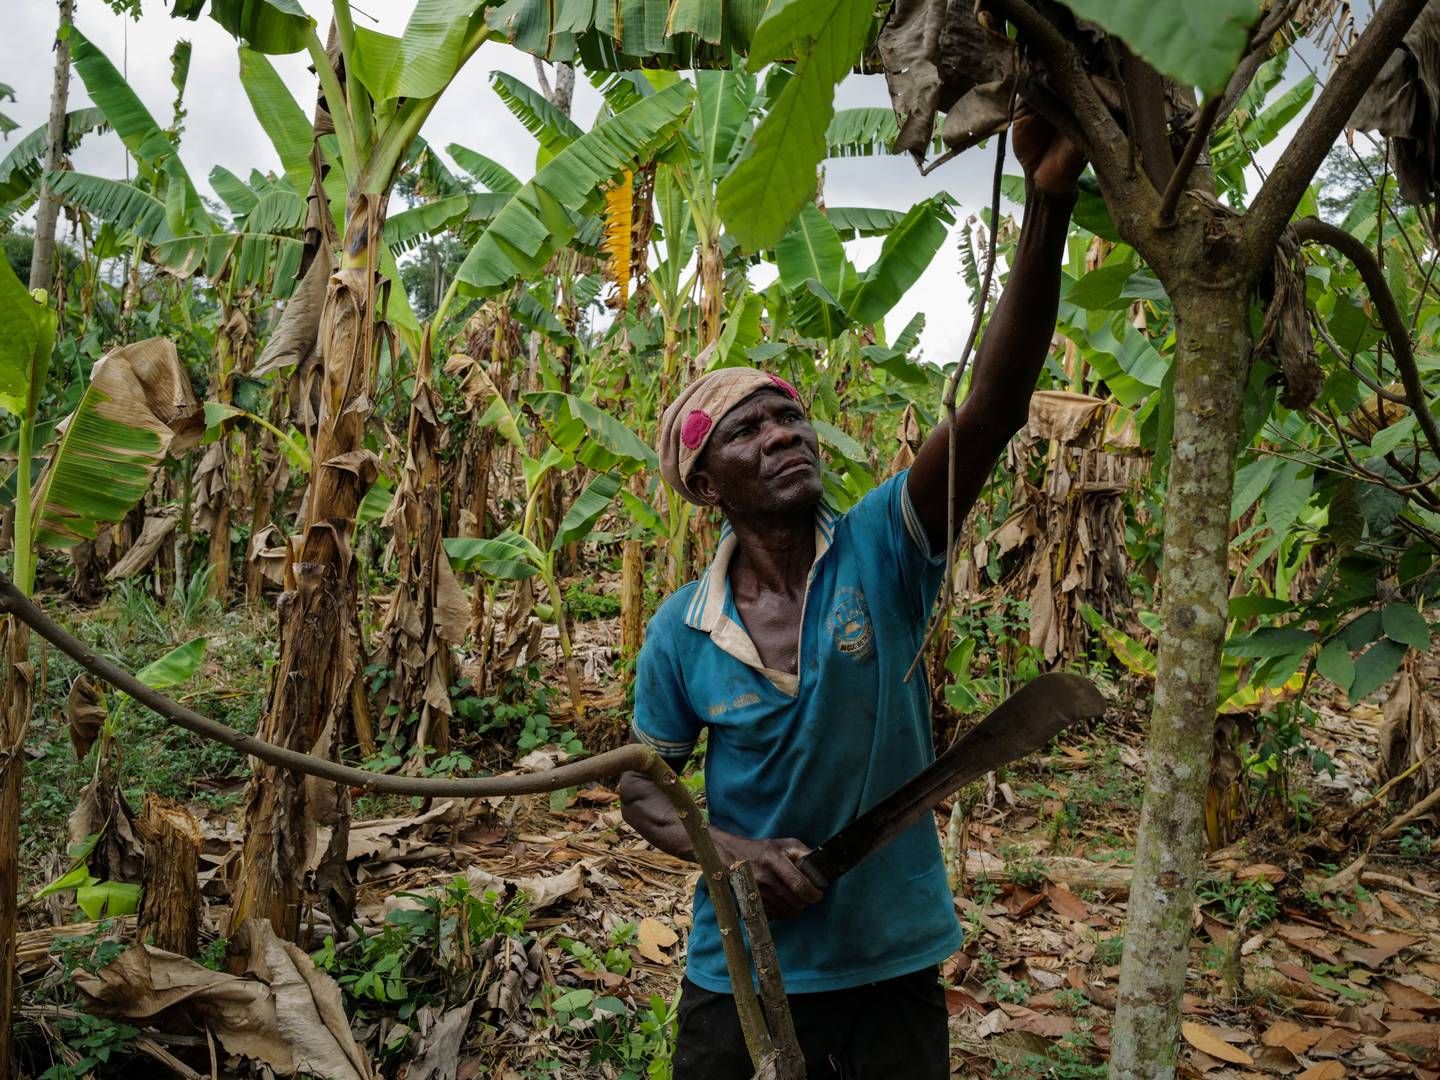 Det er en kombination af dårlige vejrforhold, gamle kakaotræer og sygdom, der sat skub i prisstigningerne. | Foto: Francis Kokoroko/Reuters/Ritzau Scanpix